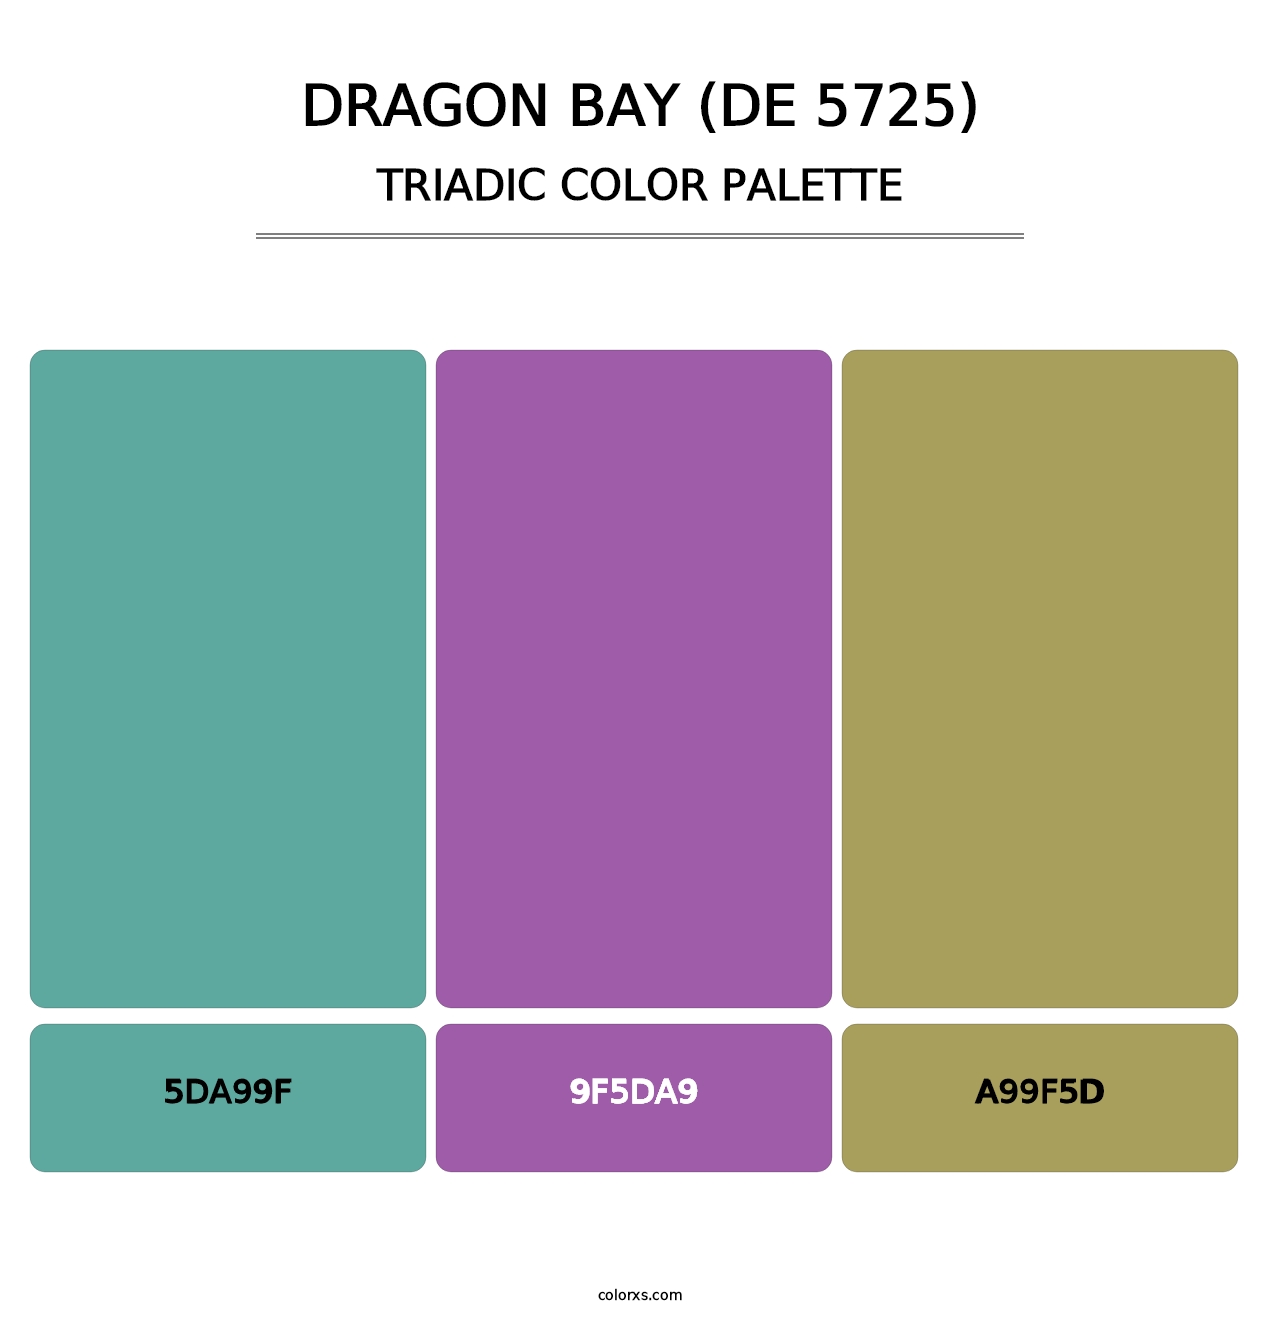 Dragon Bay (DE 5725) - Triadic Color Palette